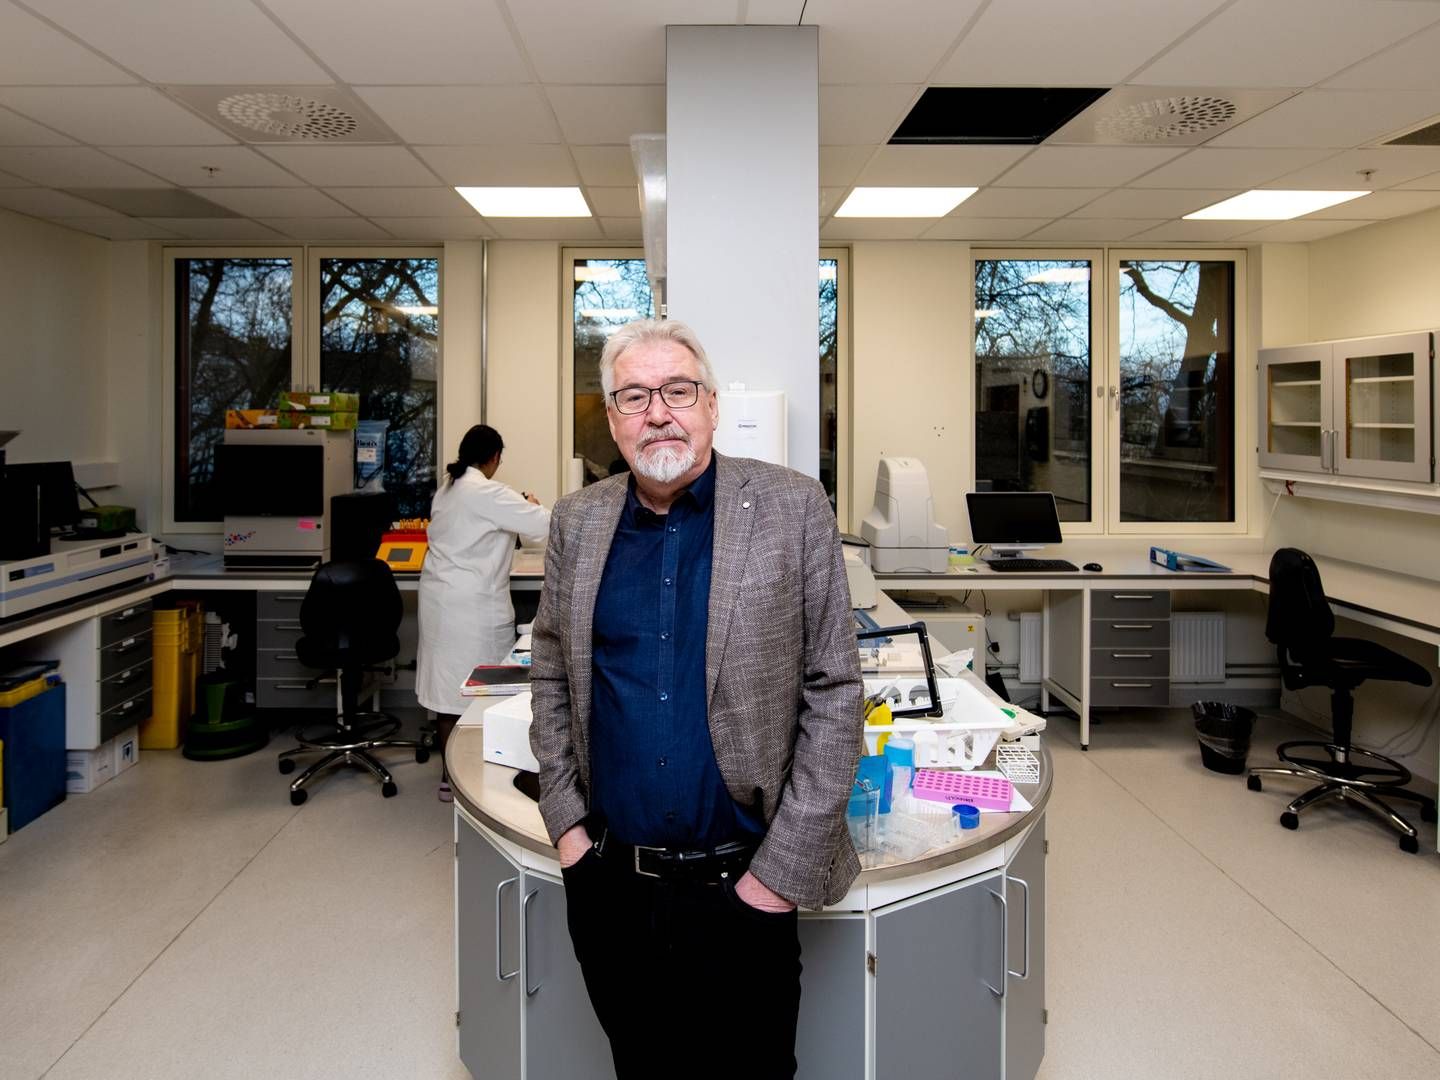 FORNØYD: Jonas Einarsson, administrerende direktør i Radiumhospitalets forskningsstiftelse Radforsk, og grunnlegger av Oslo Cancer Cluster, er svært fornøyd med å ha fått inn Thermo Fisher som leietager. | Foto: Vidar Sandnes